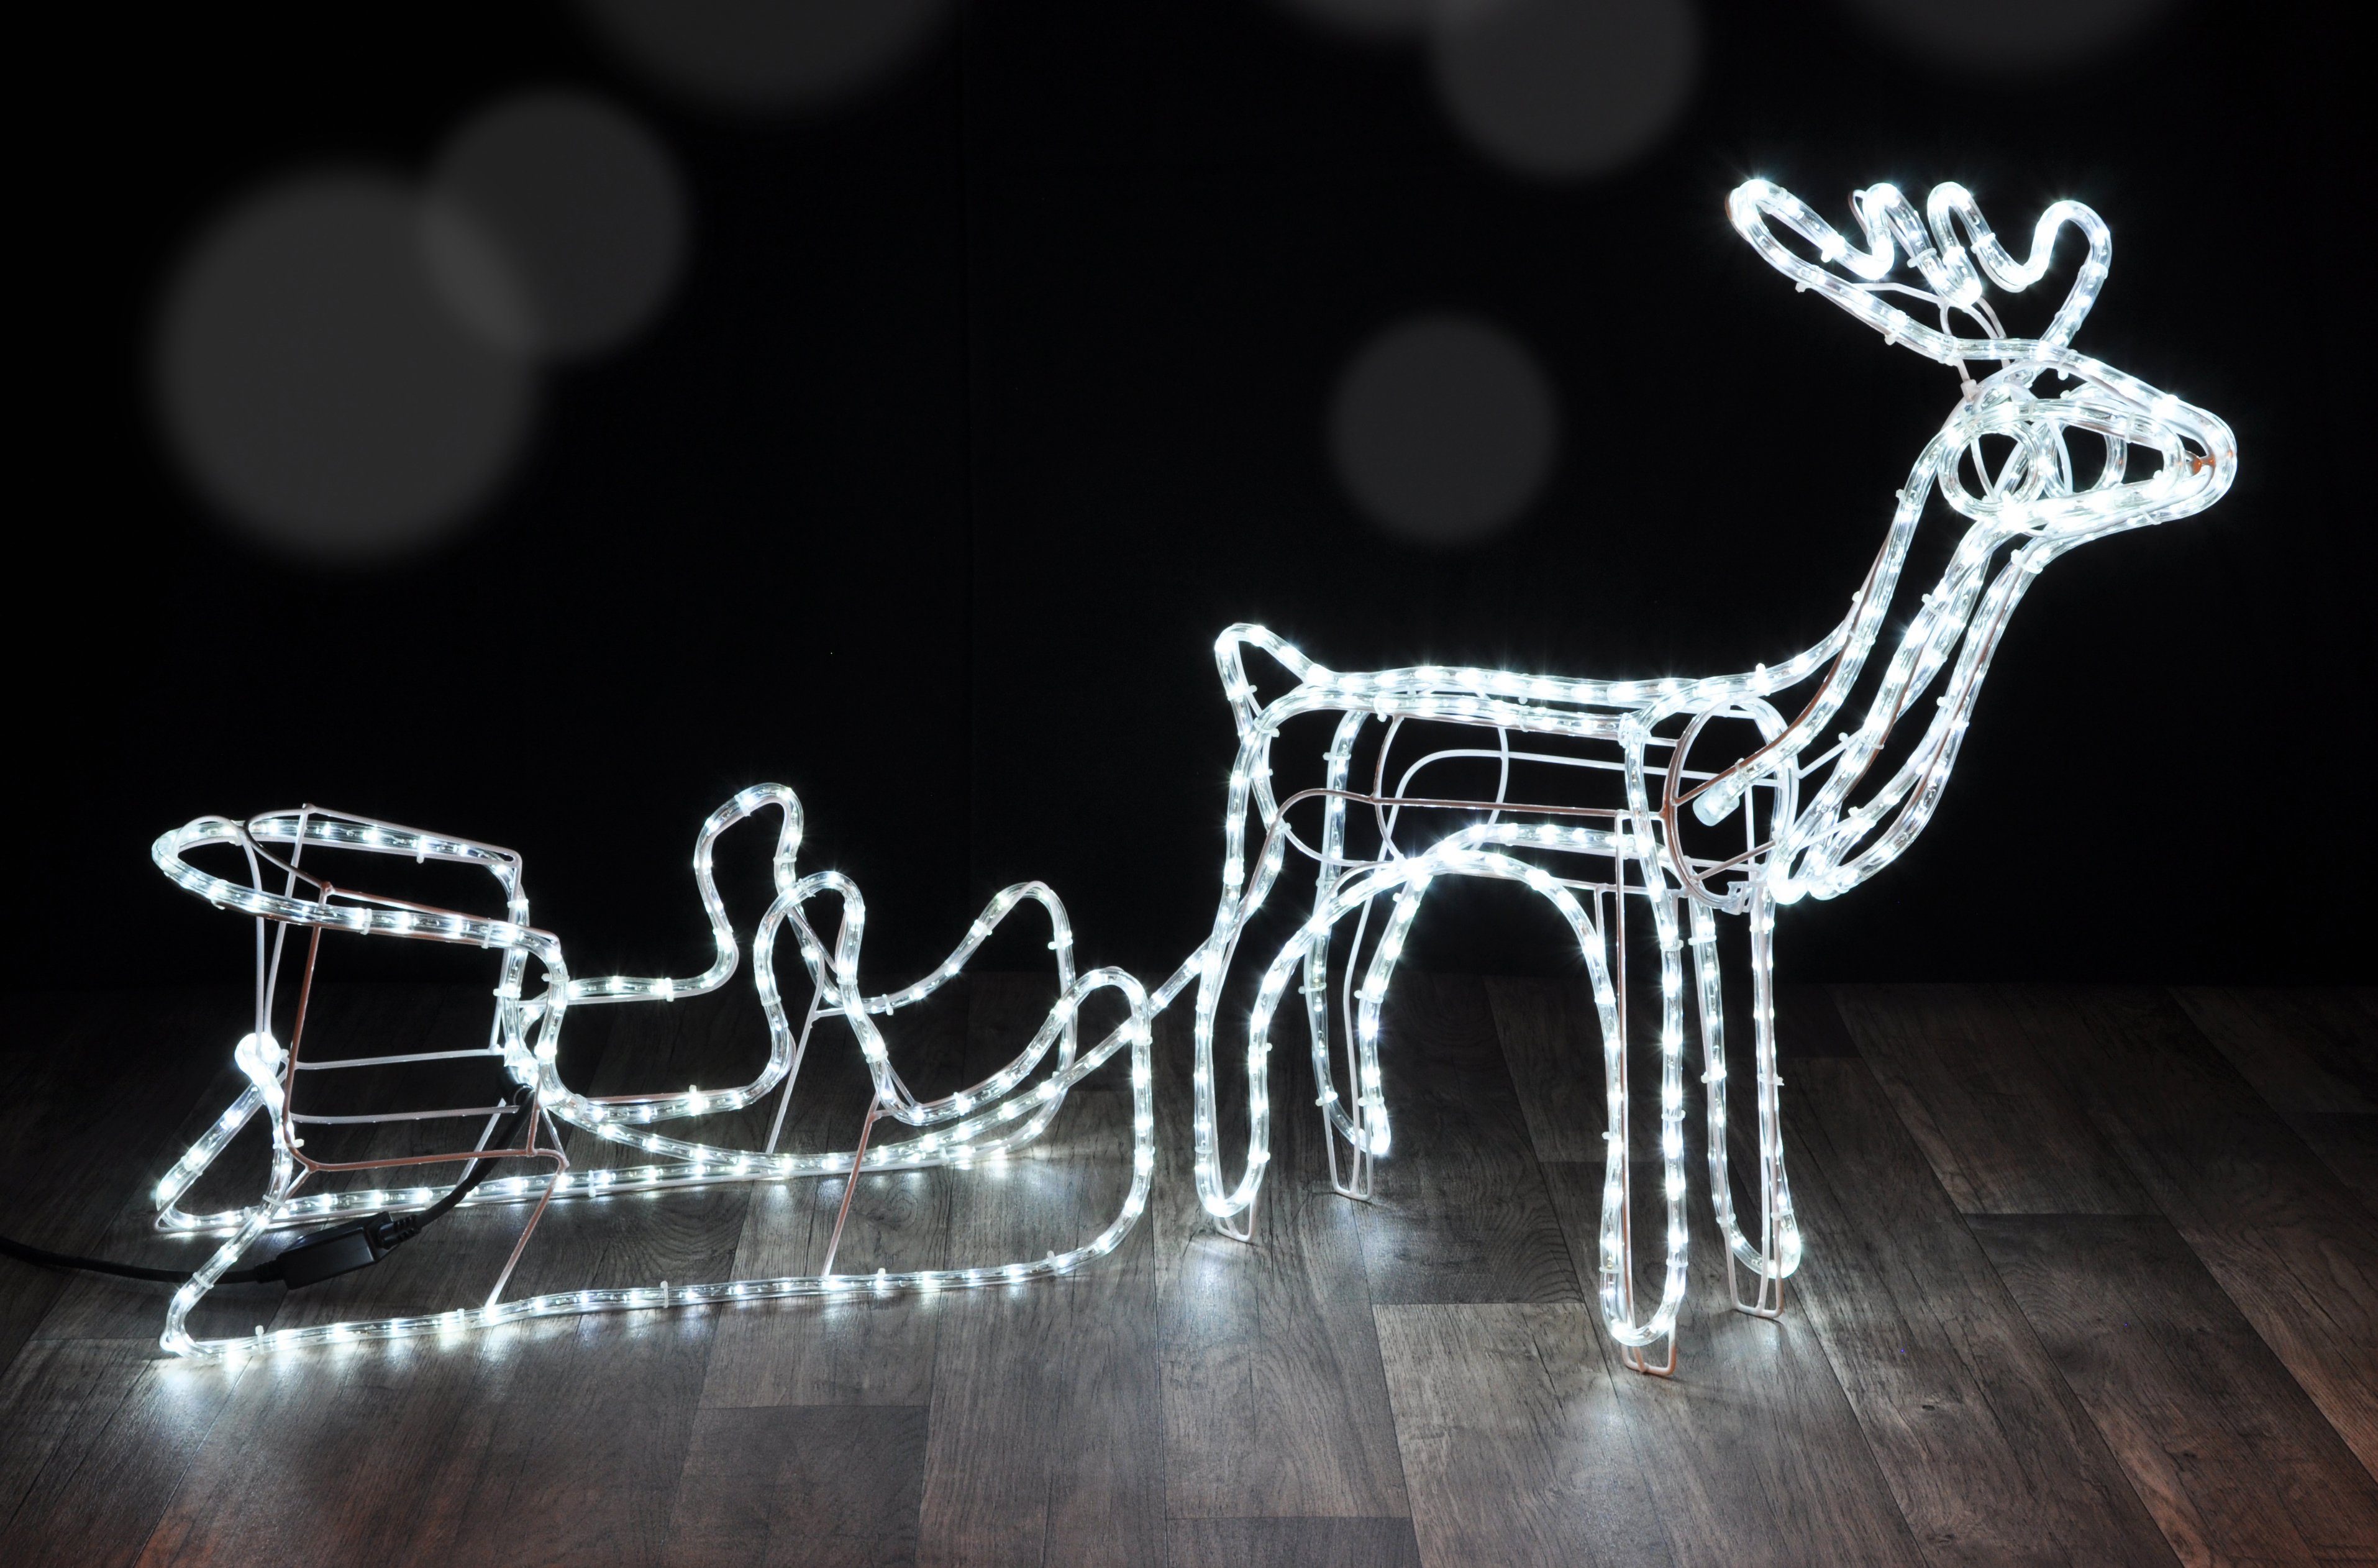 Haushalt International Weihnachtsfigur Rentier mit Schlitten 145cm (1 St), 288 LED eisweiss, für Außen